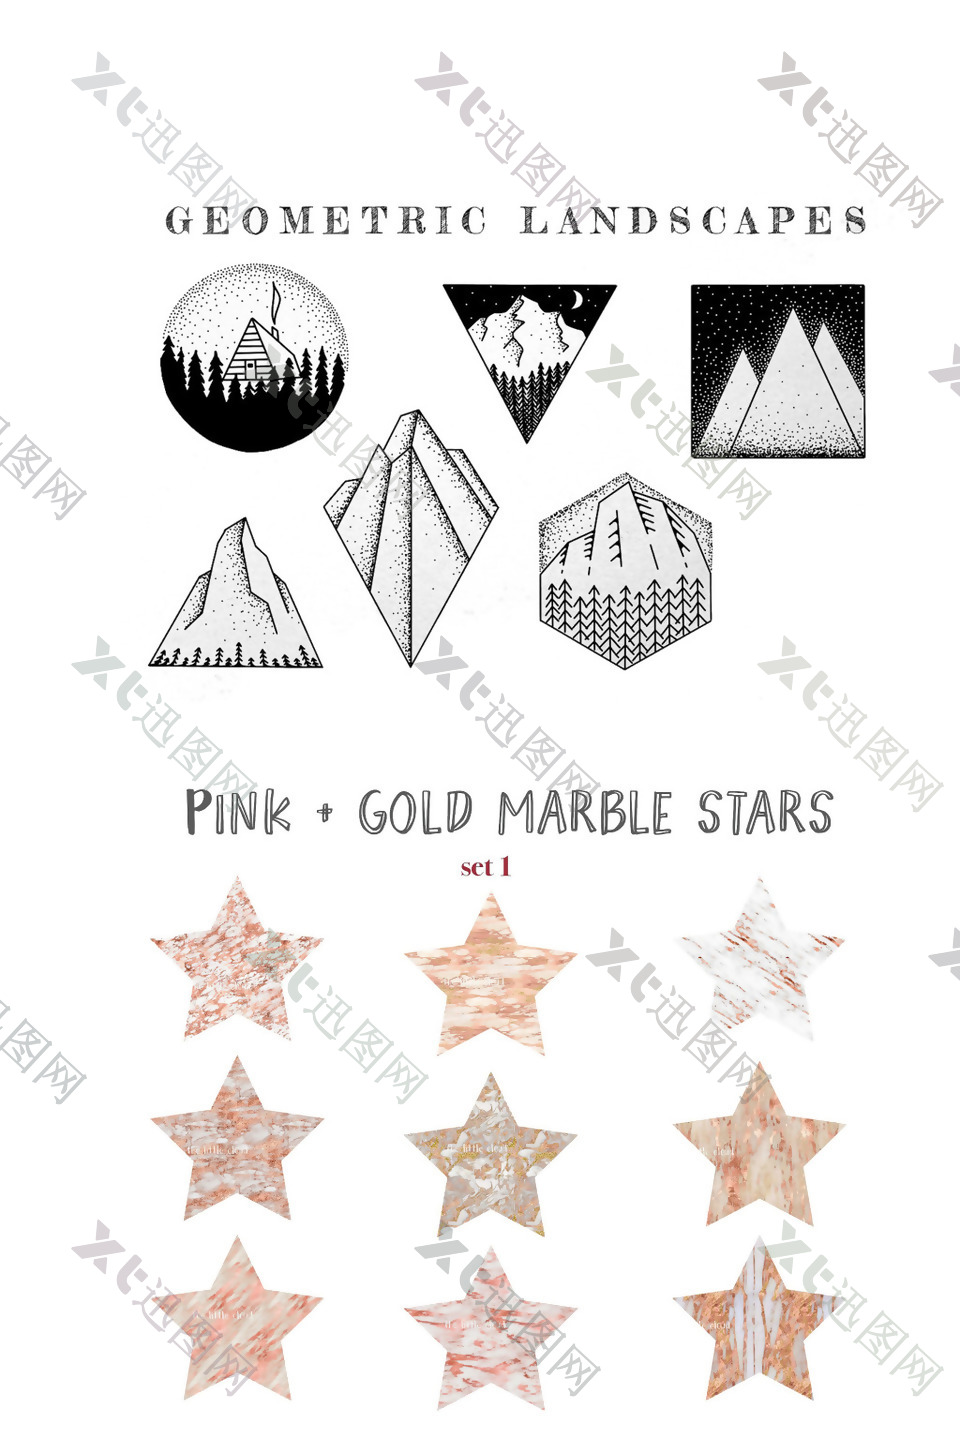 地球几何景观和粉色大理石材质五角星